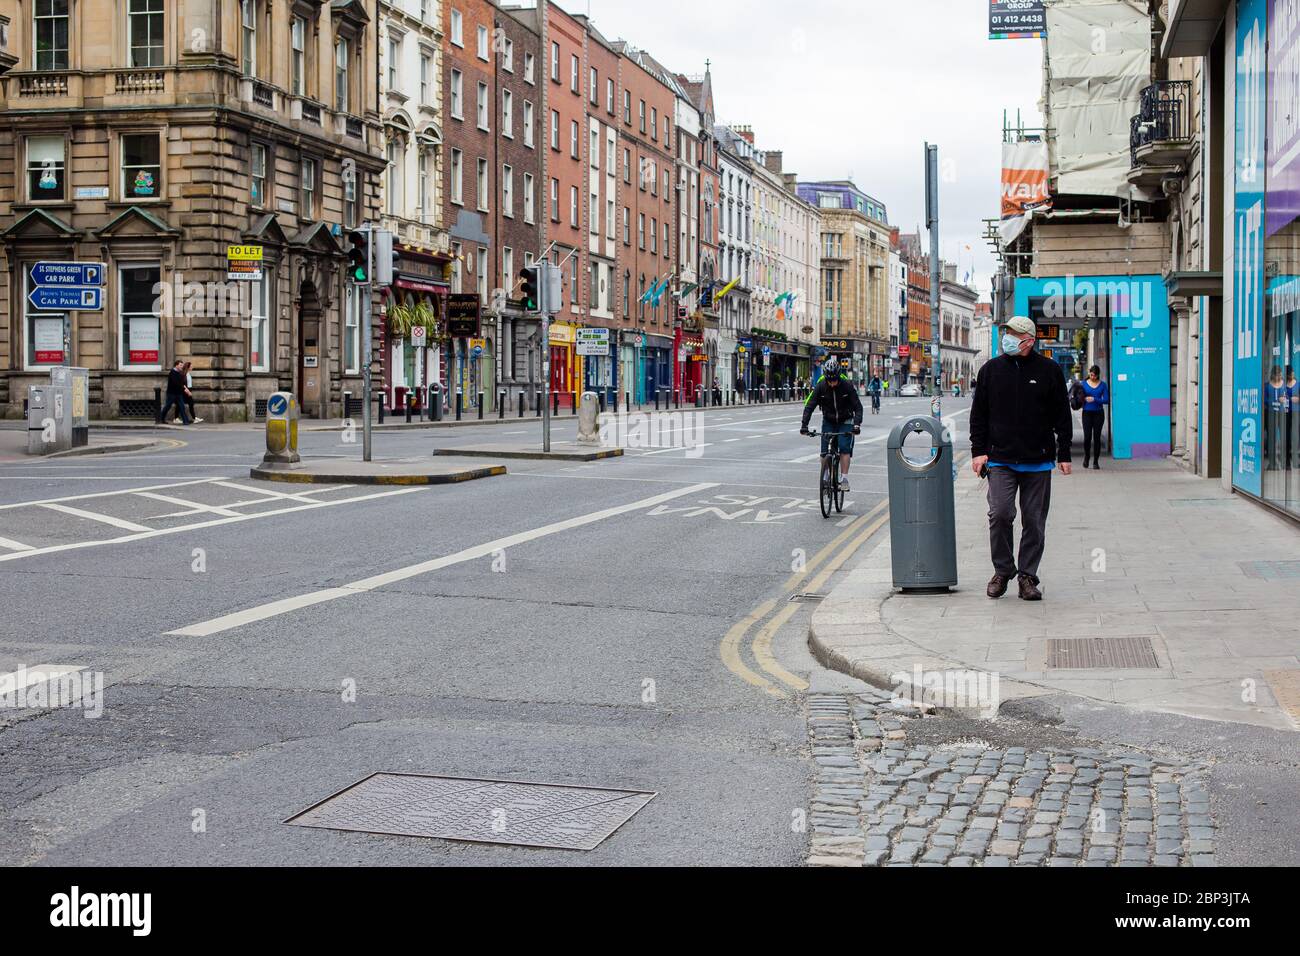 Verlassene Dame Street im Stadtzentrum von Dublin. Geschlossene Geschäfte und verringerter Verkehr aufgrund von Einschränkungen bei der Coronavirus-Pandemie. Mai 2020, Dublin, Irland Stockfoto